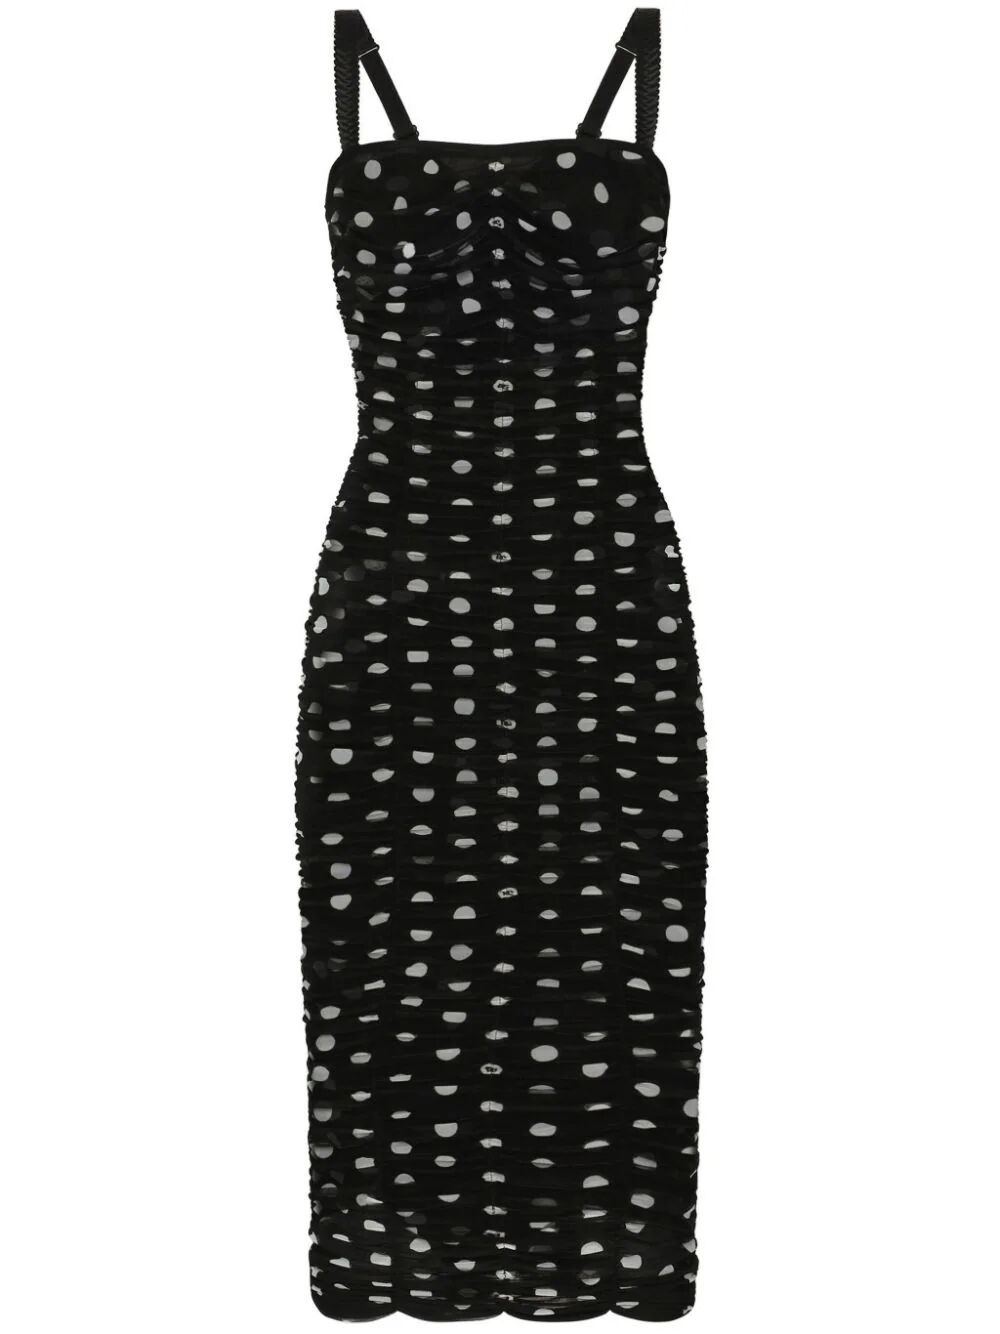 Shop Dolce & Gabbana Mambo Collection: Draped Sheath Dress In Polka Dot Print Tulle In Black